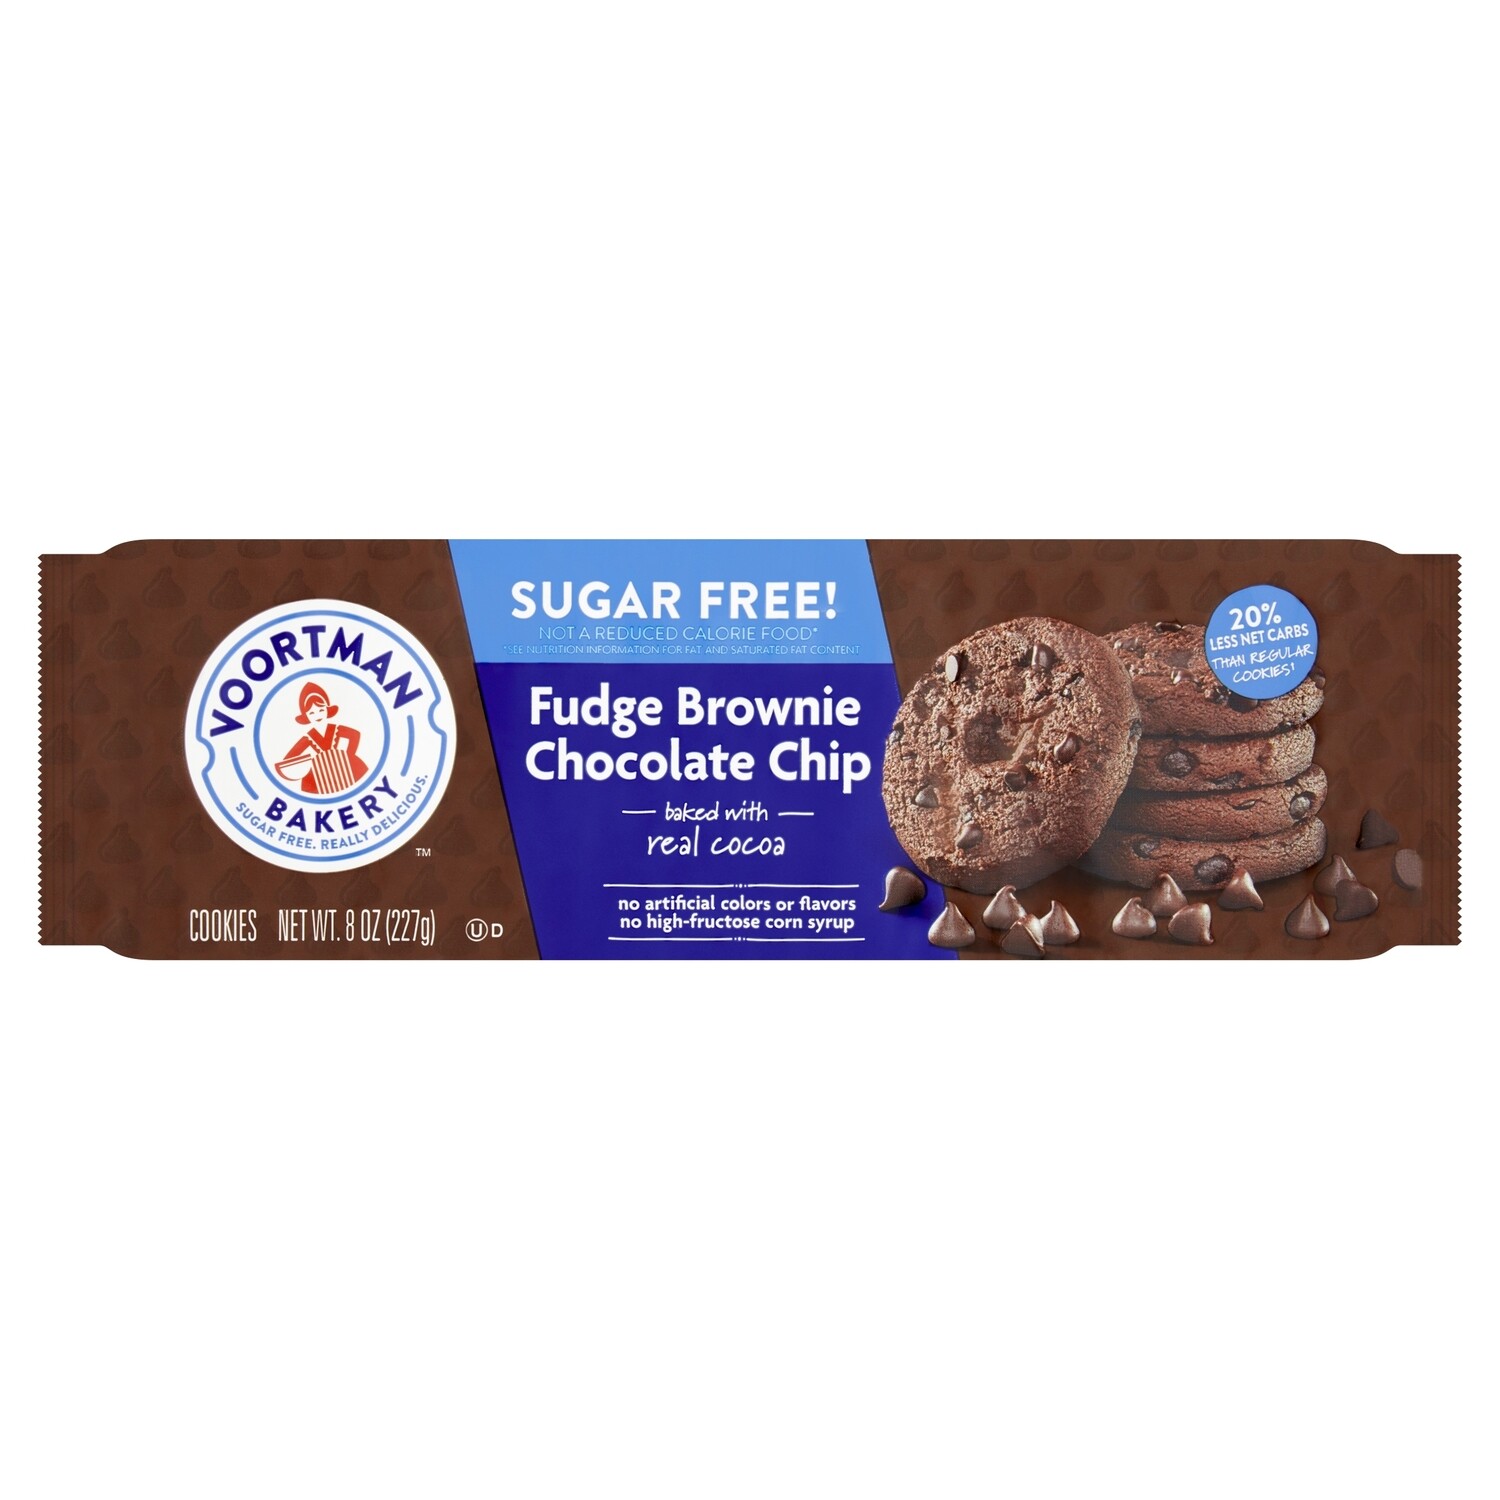 Voortman Bakery Fudge Brownie Chocolate Chip Cookies SUGAR FREE